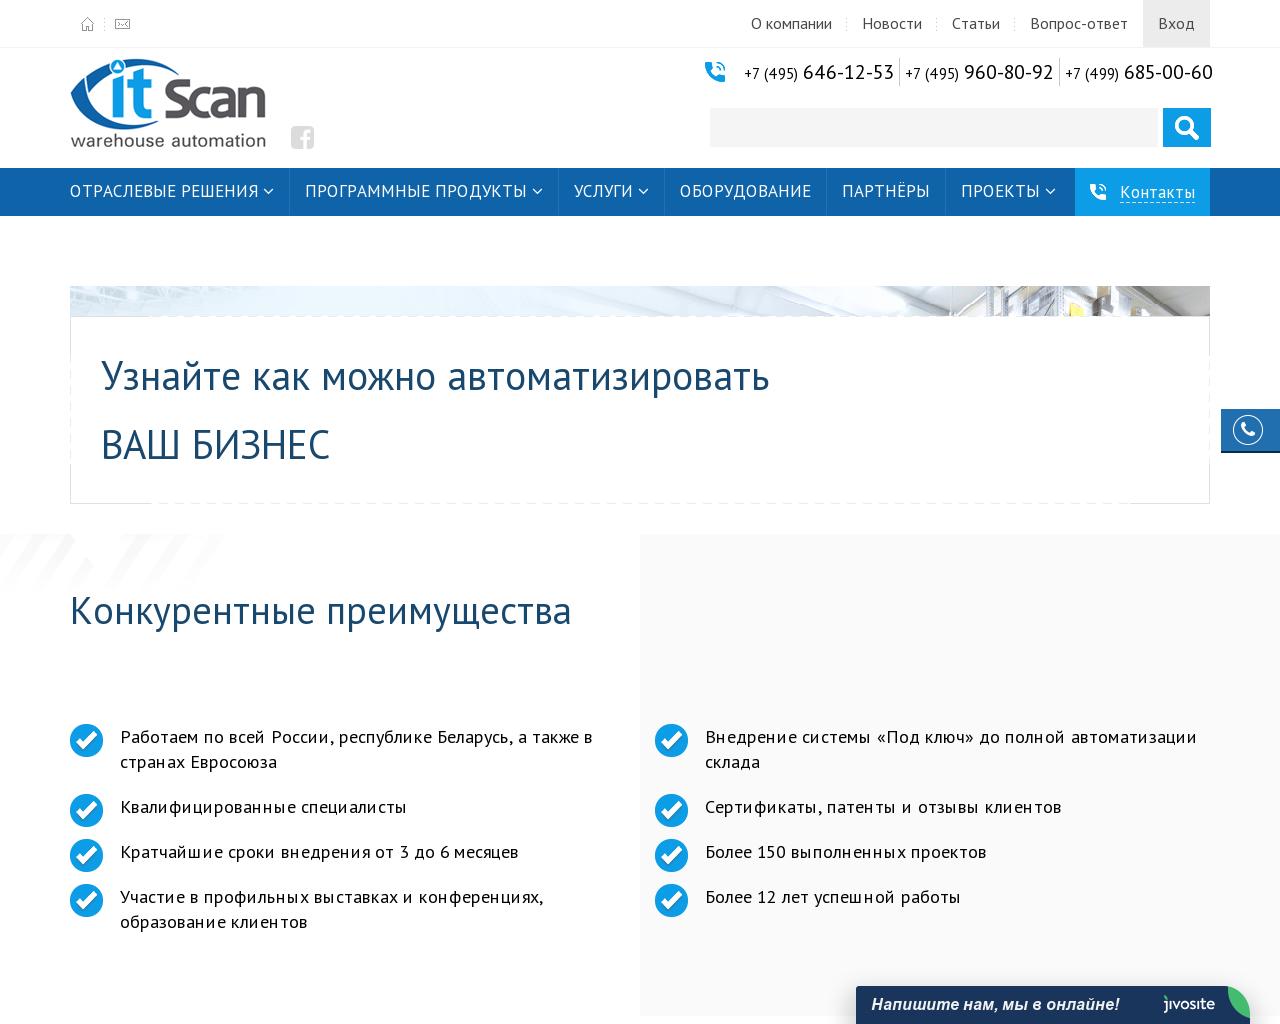 Изображение сайта itscan.ru в разрешении 1280x1024